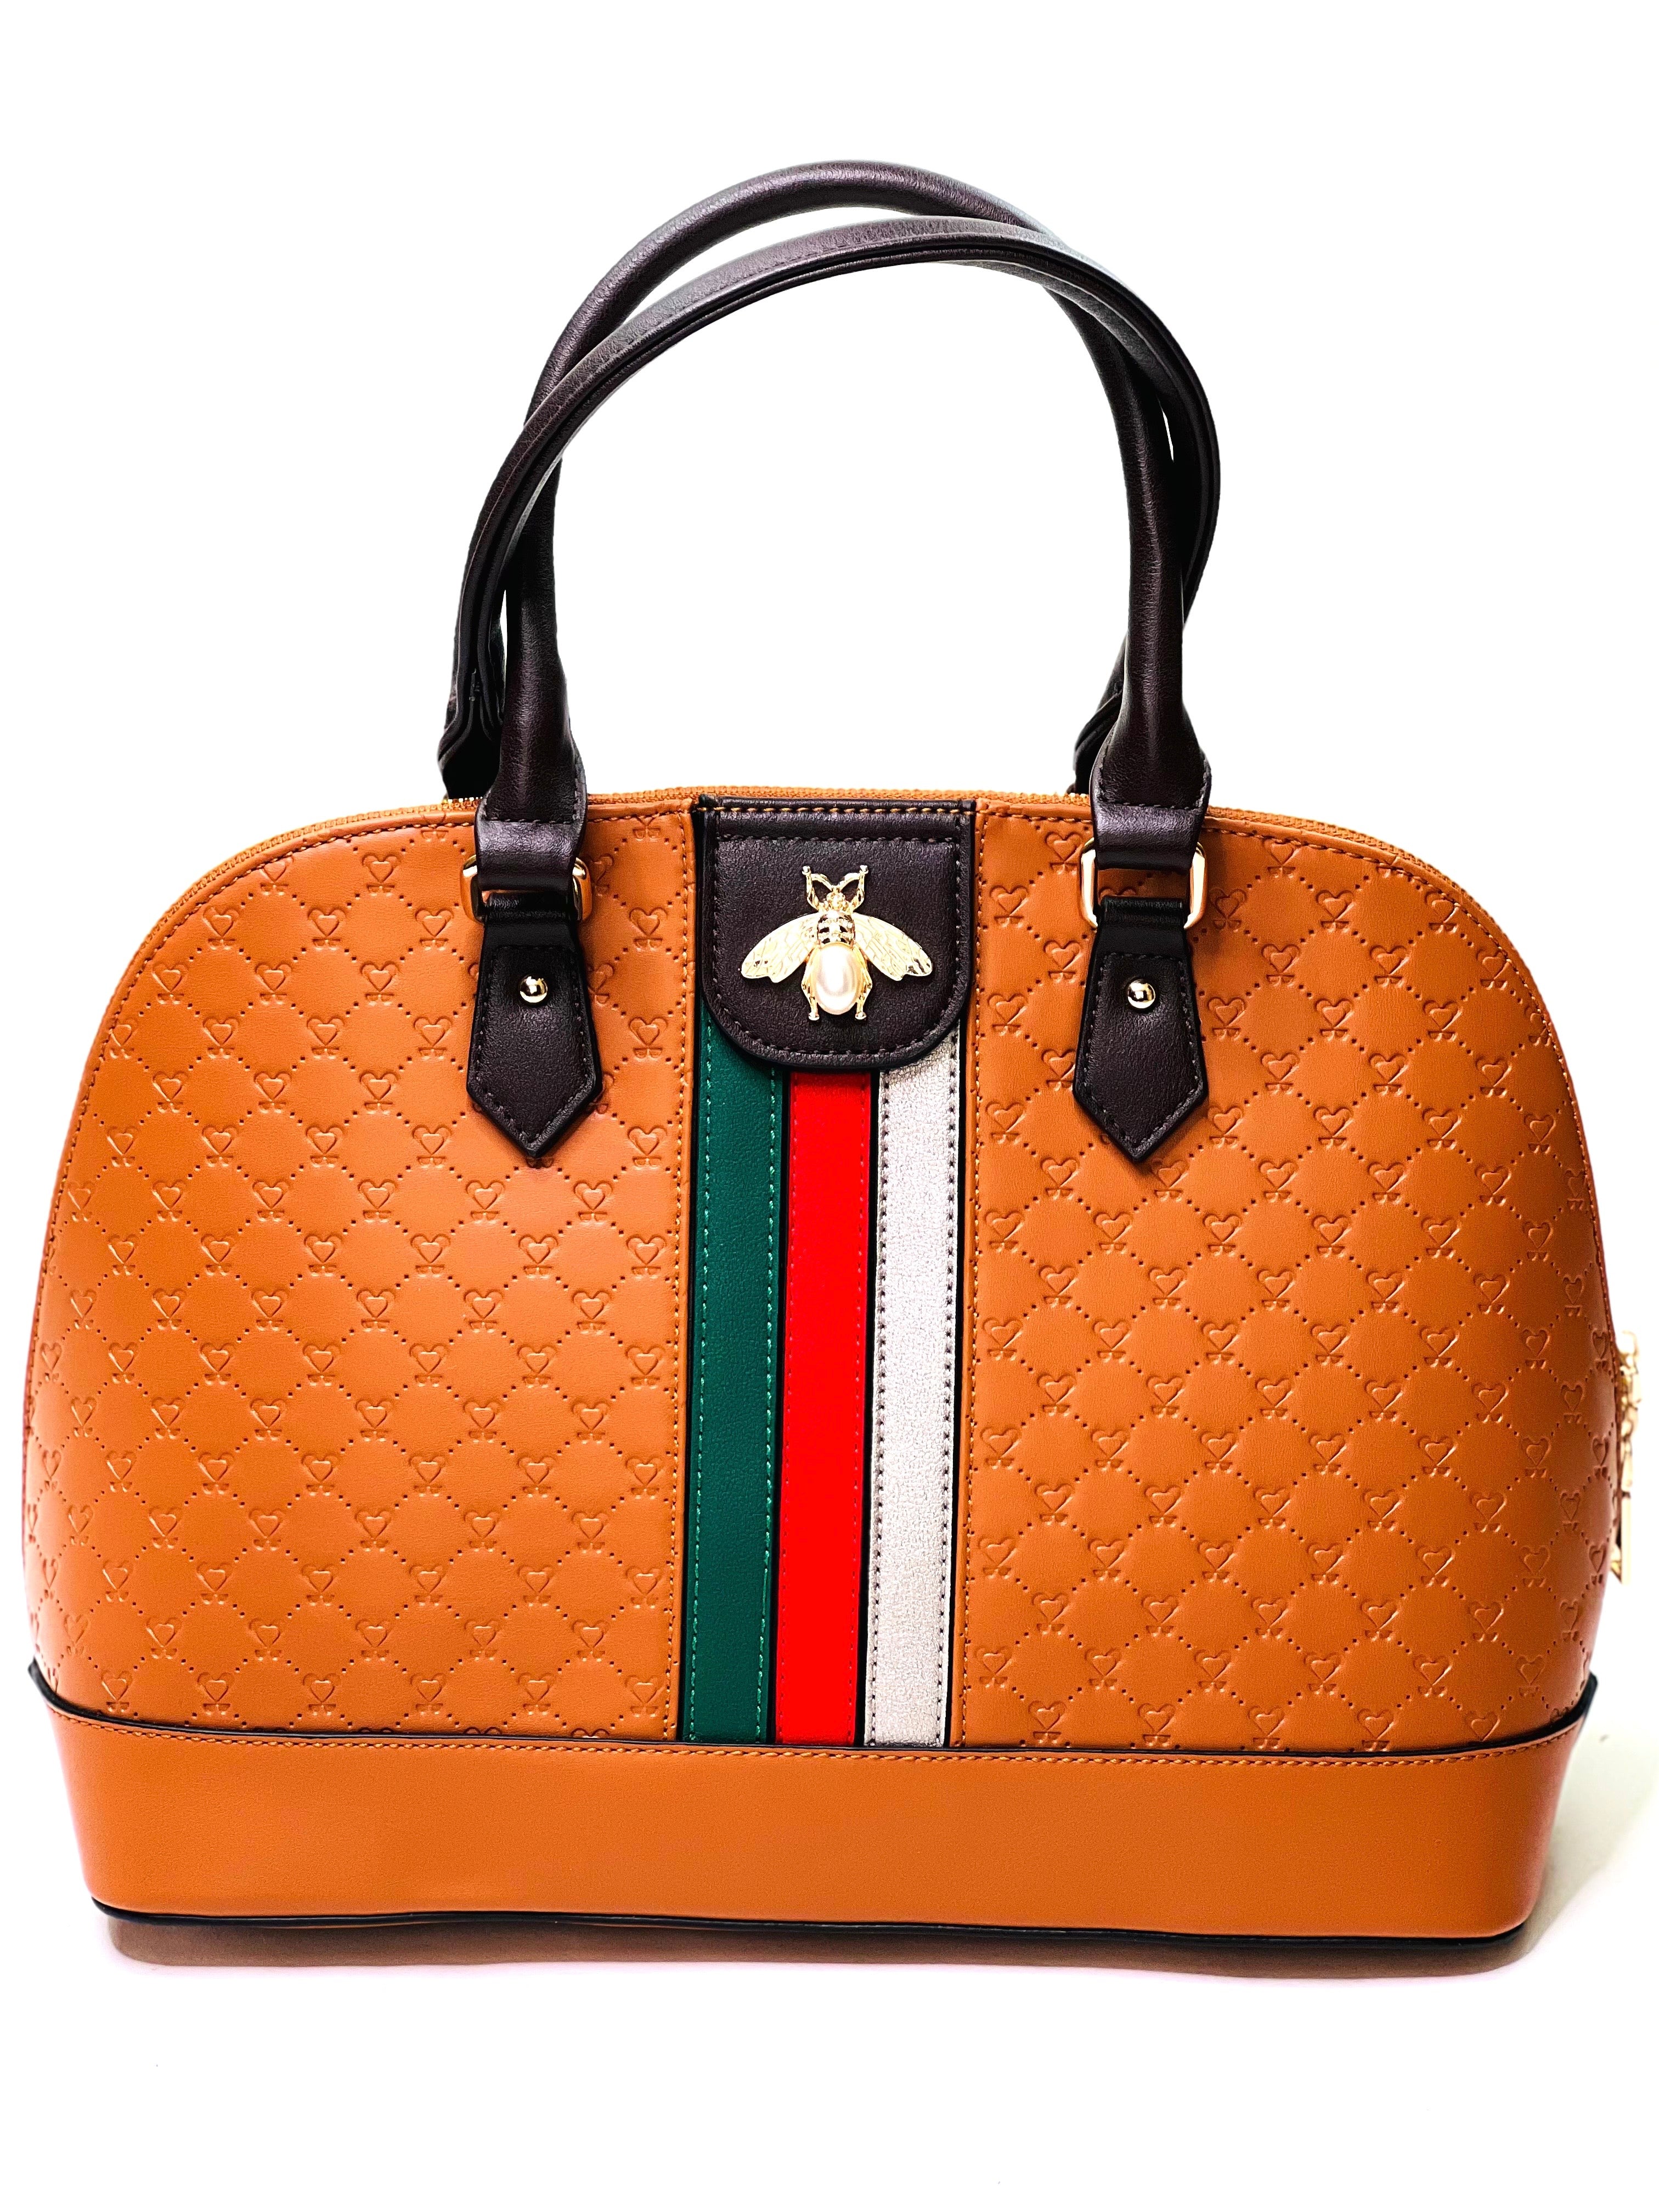 Cognac Brown Handbag with Bee - Jewellery Unique Gifts & Accessories